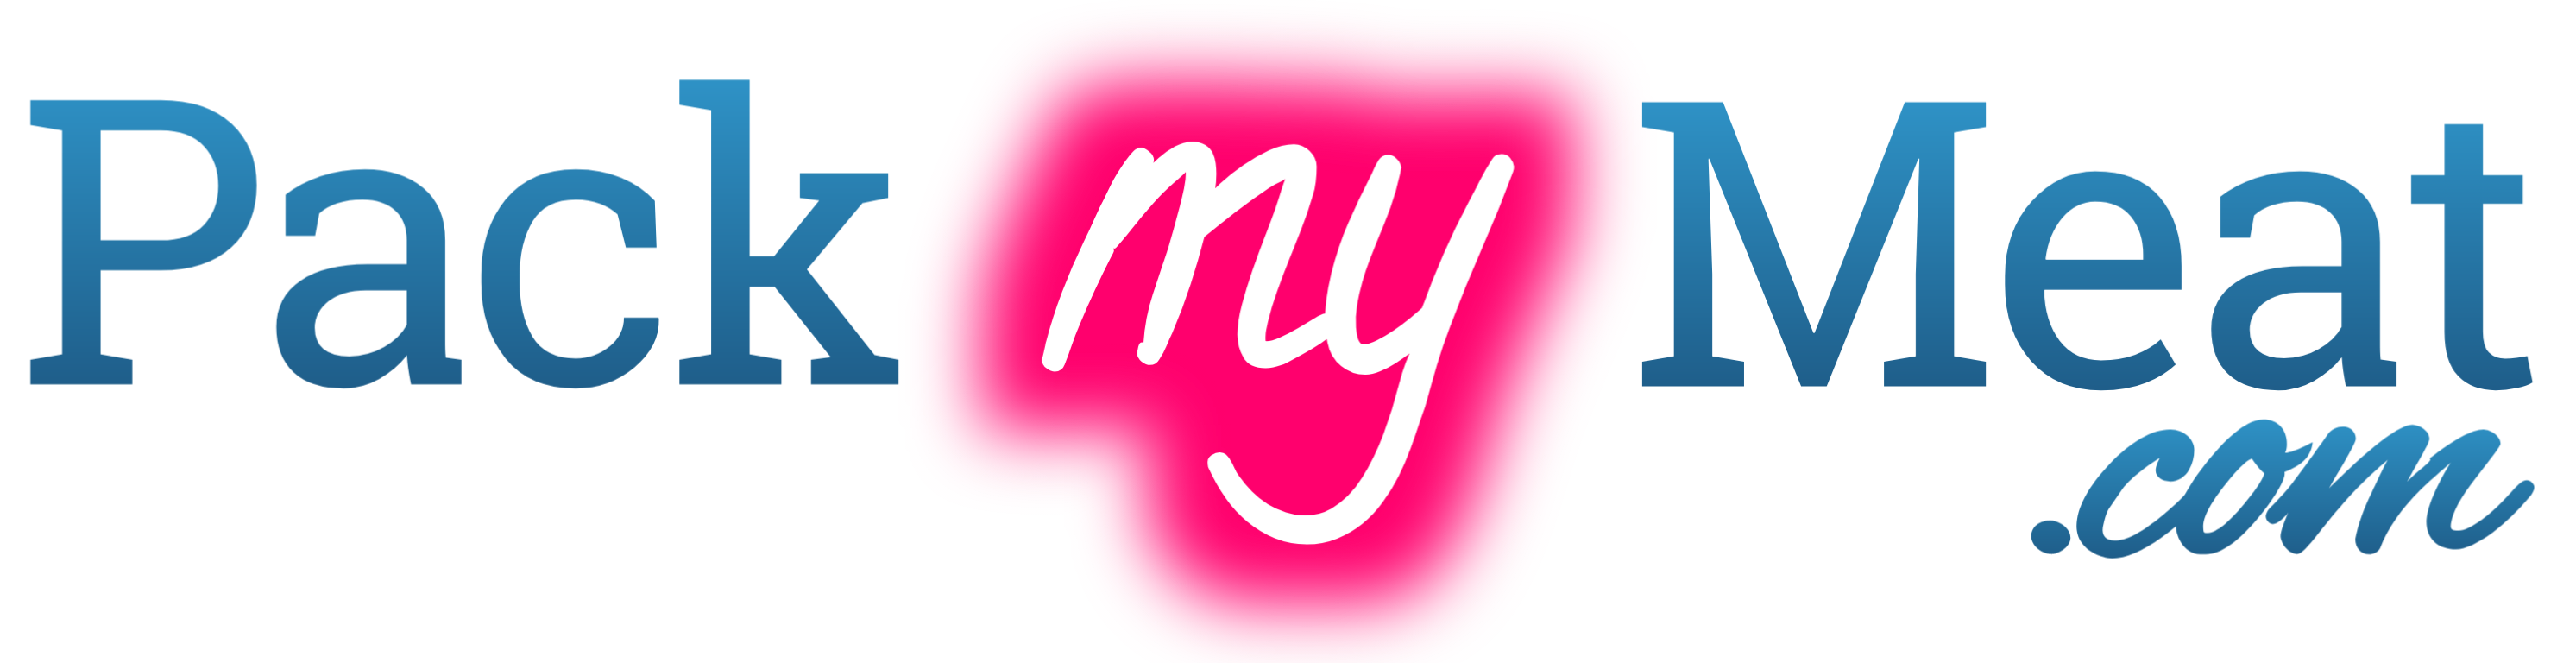 Packmymeat.com logo